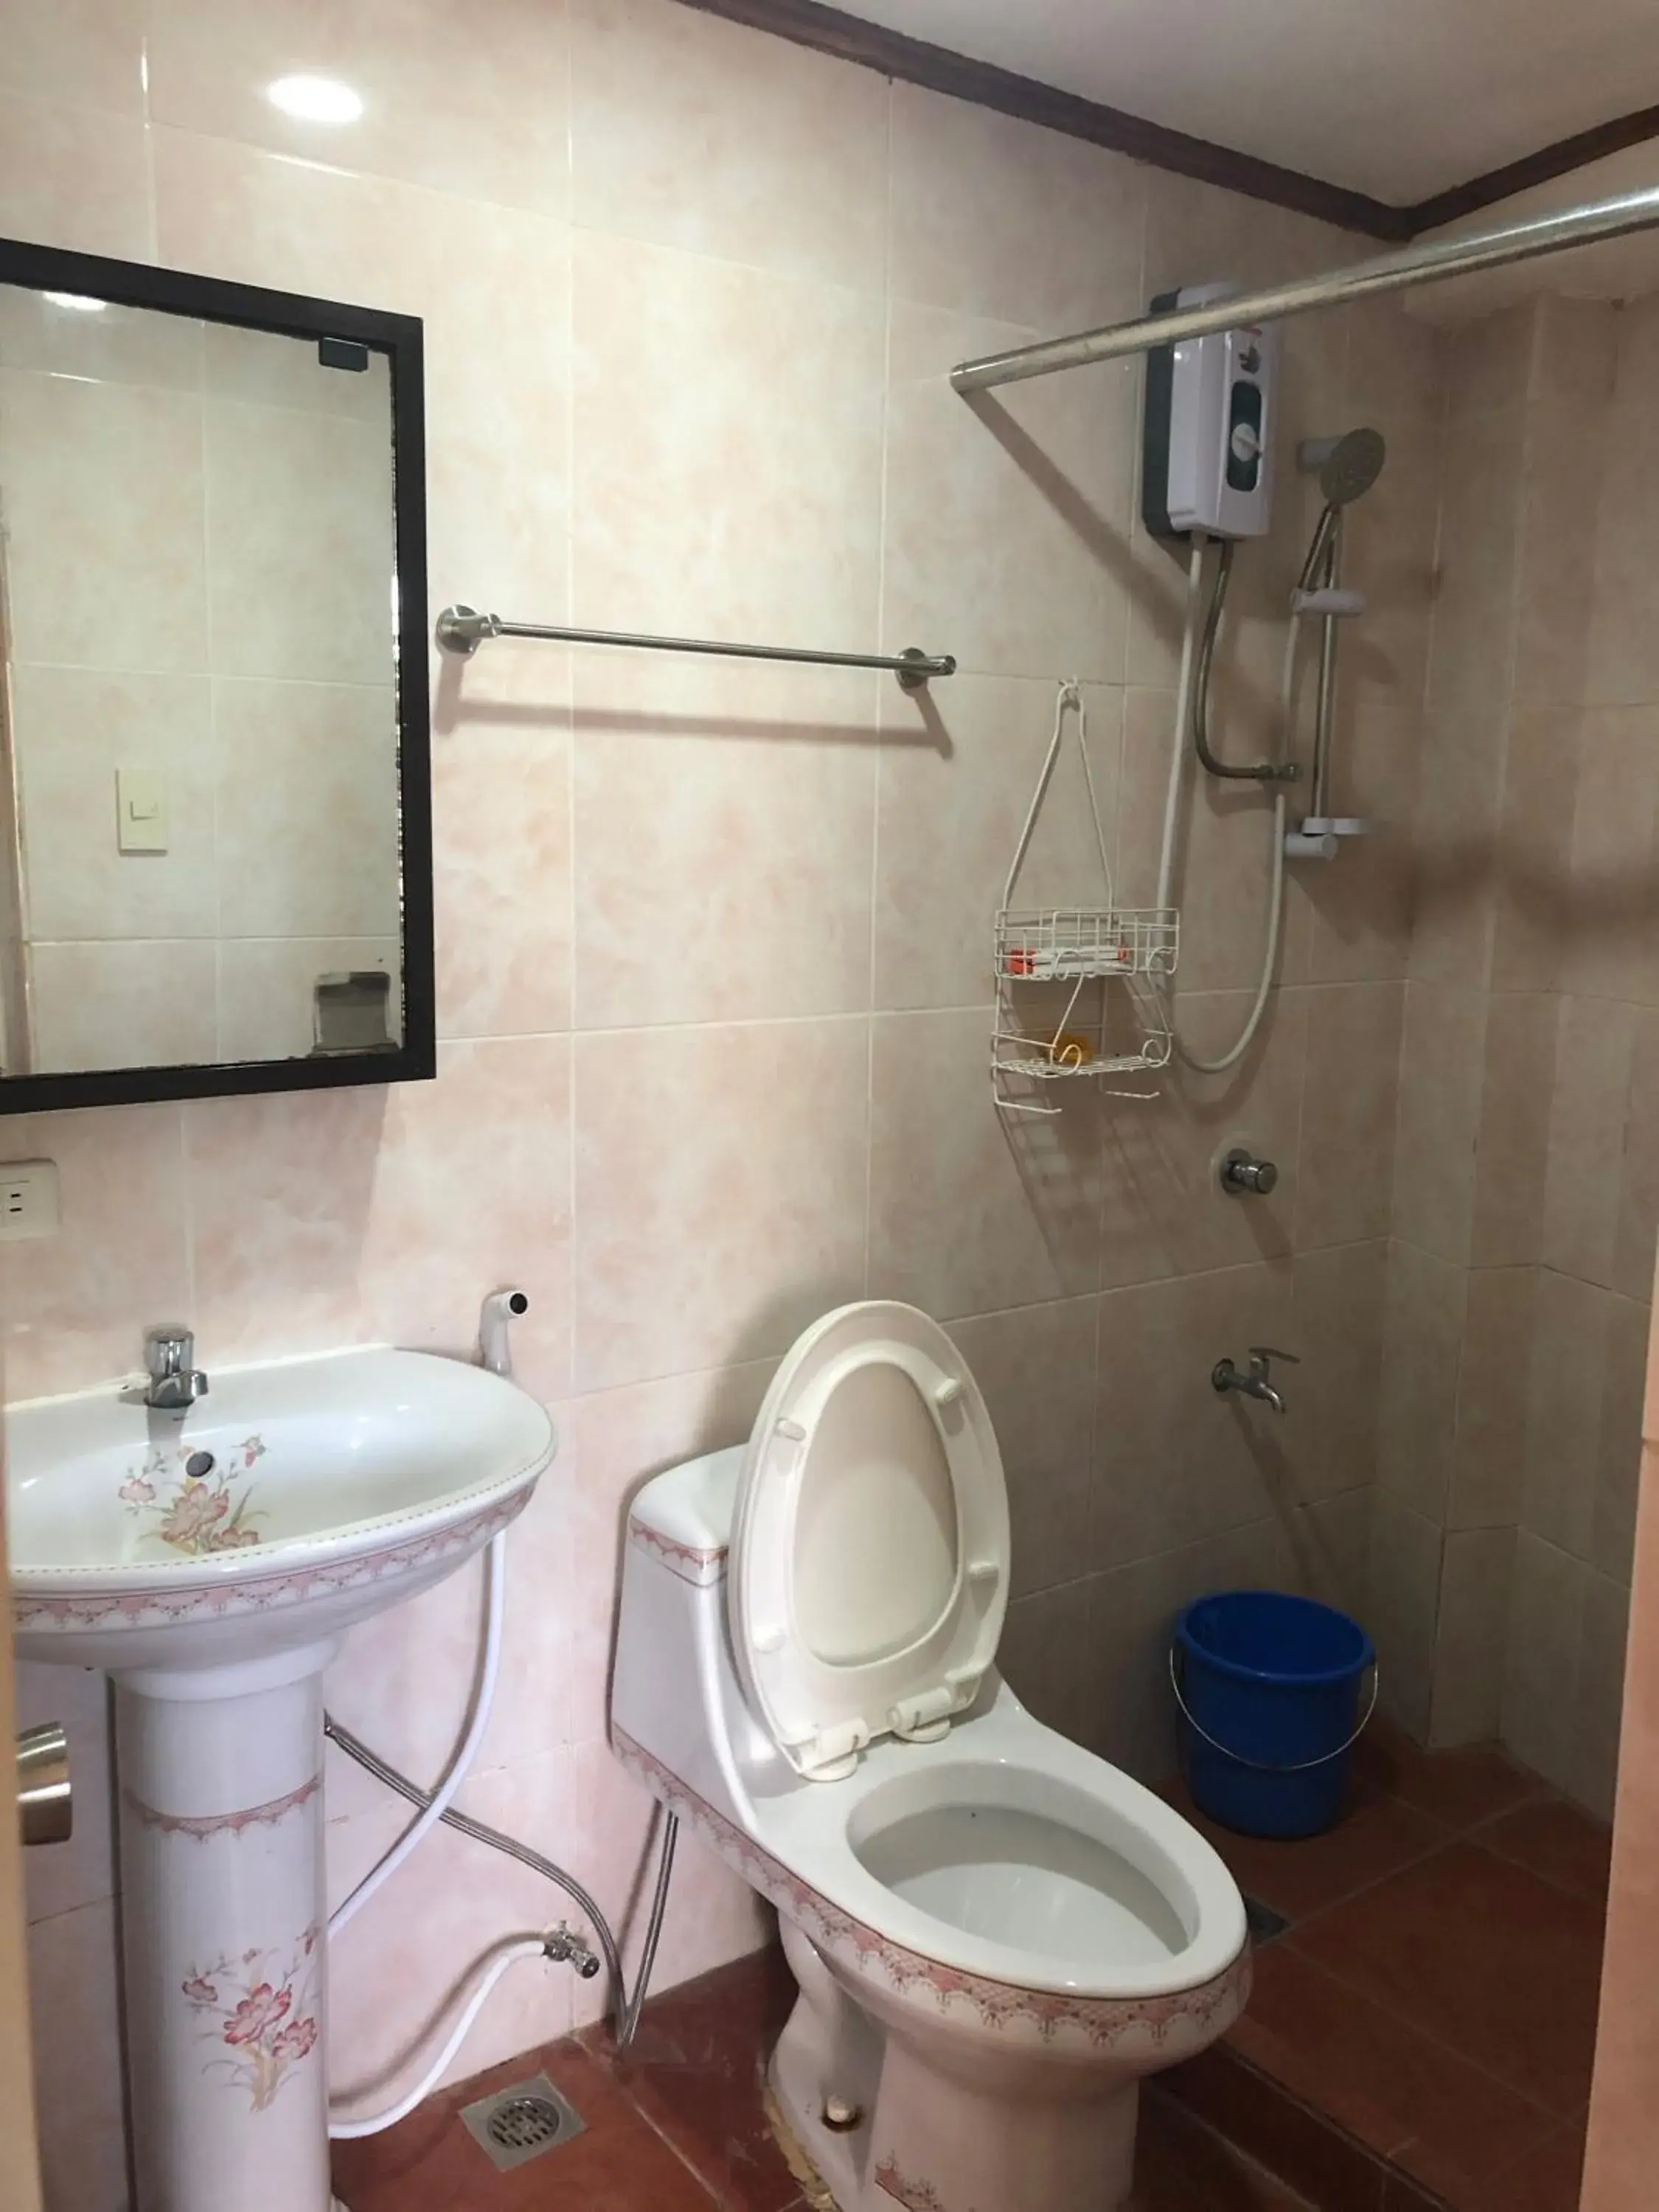 Bathroom in Badladz Staycation Condos